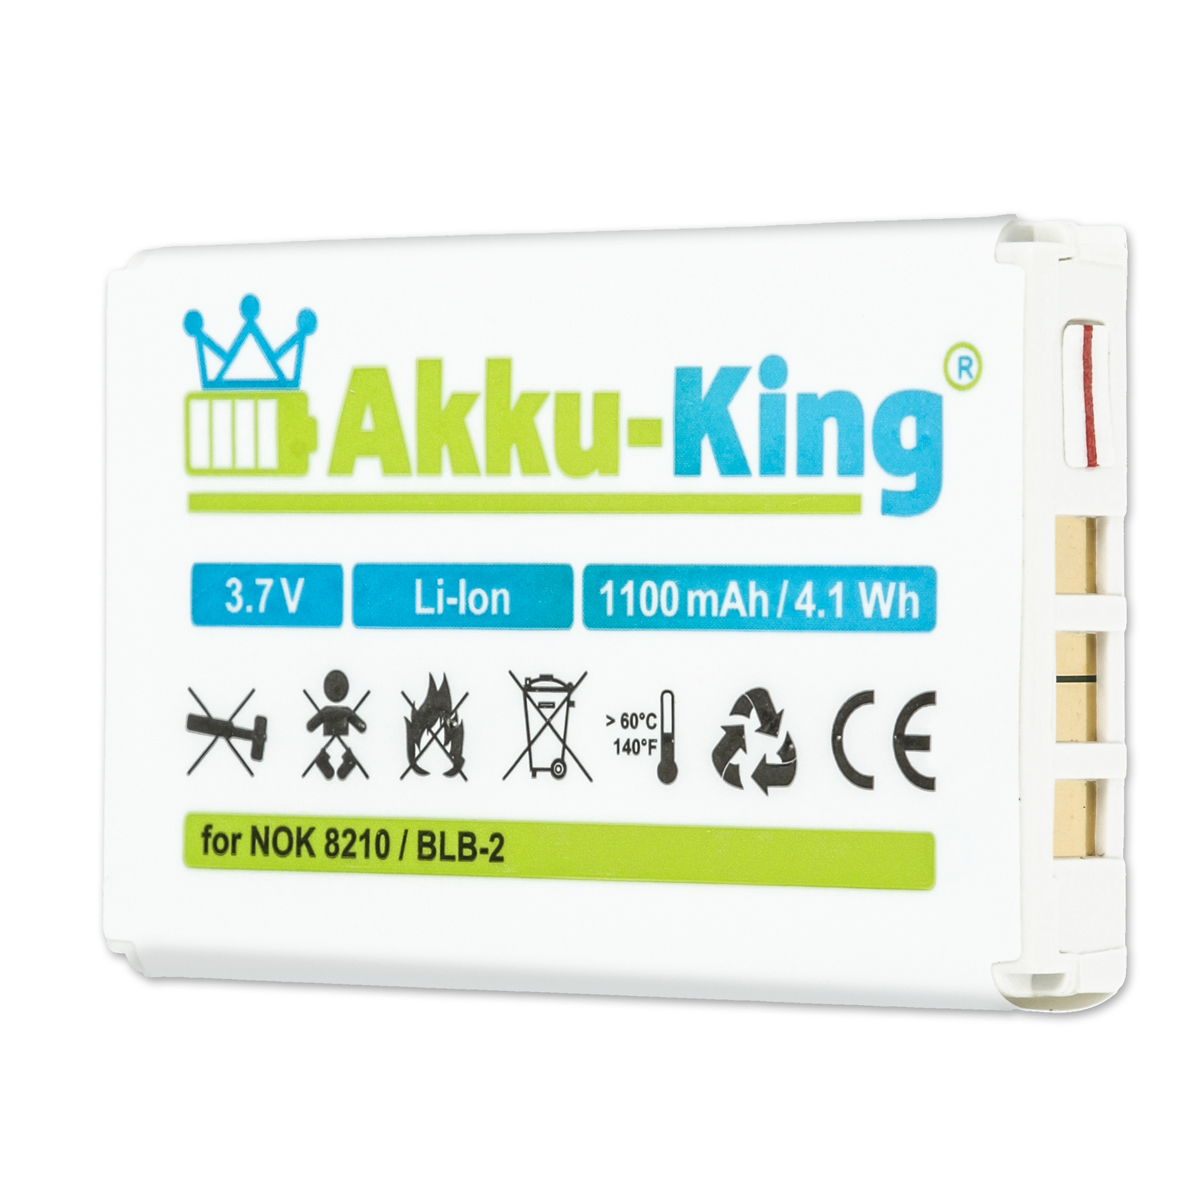 kompatibel 1100mAh 3.7 Volt, Olympic Kamera-Akku, BLB-2 mit Li-Ion AKKU-KING Akku